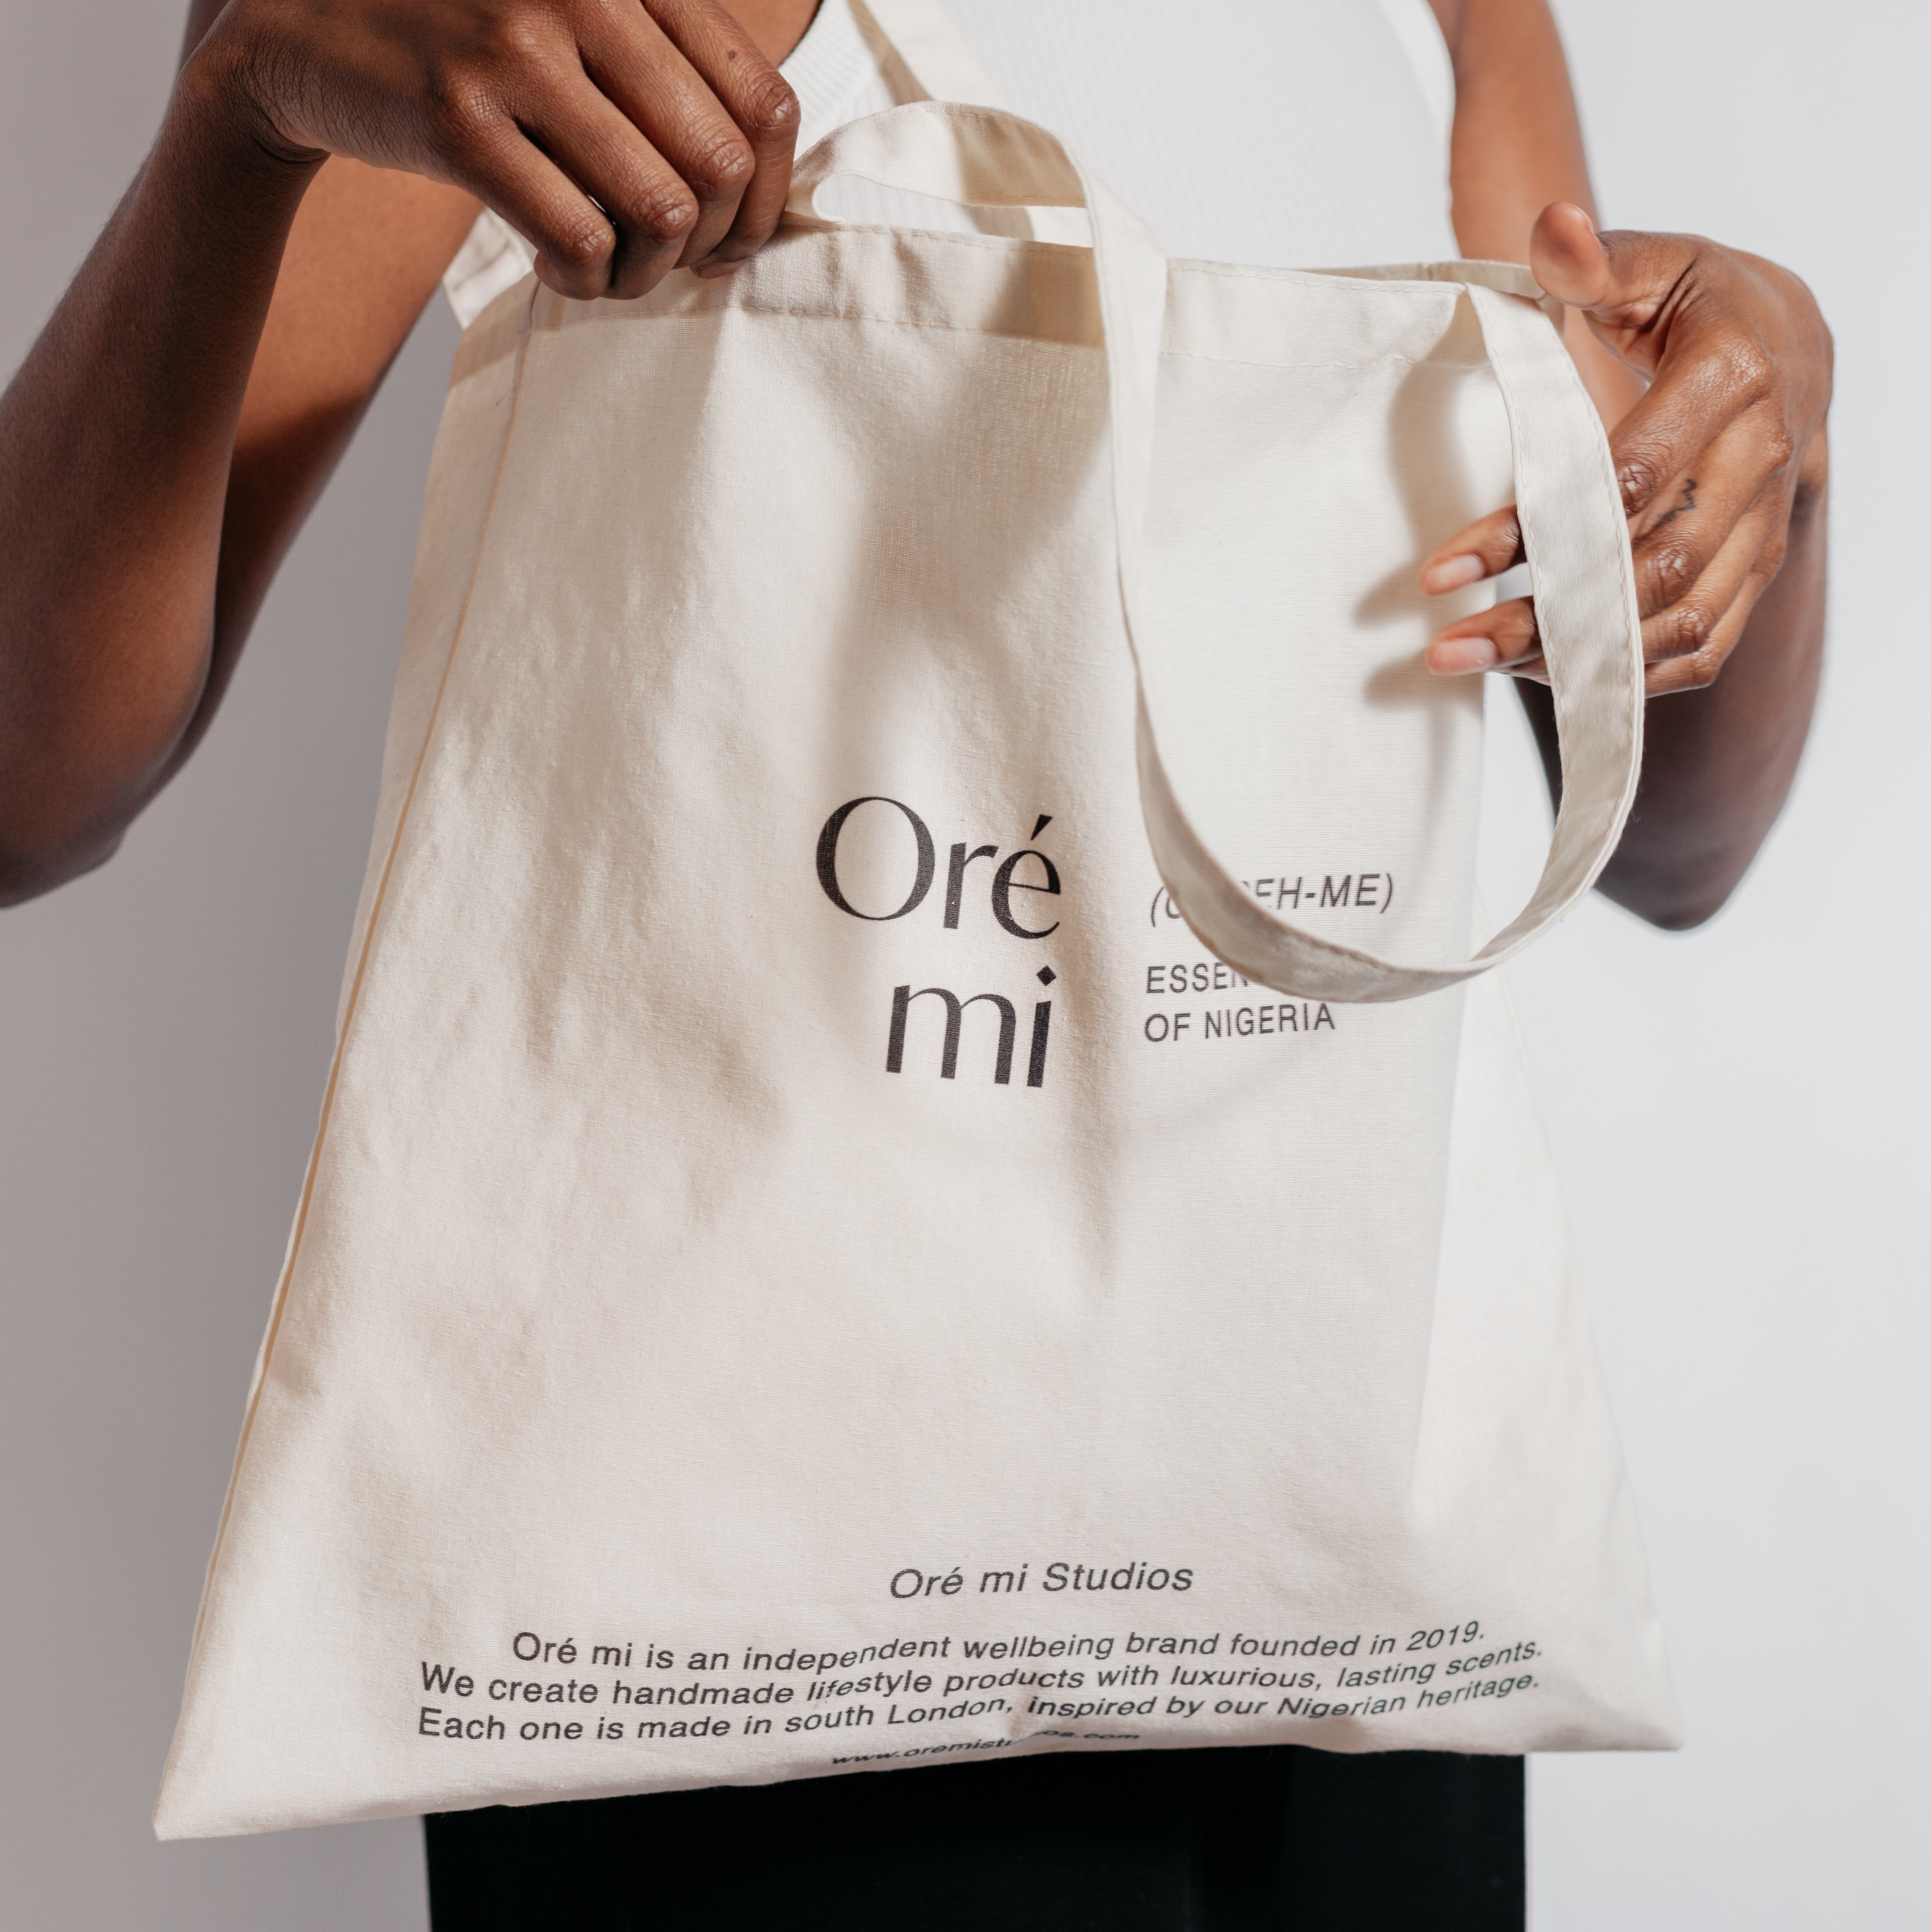 Reusable bag (tote bag)